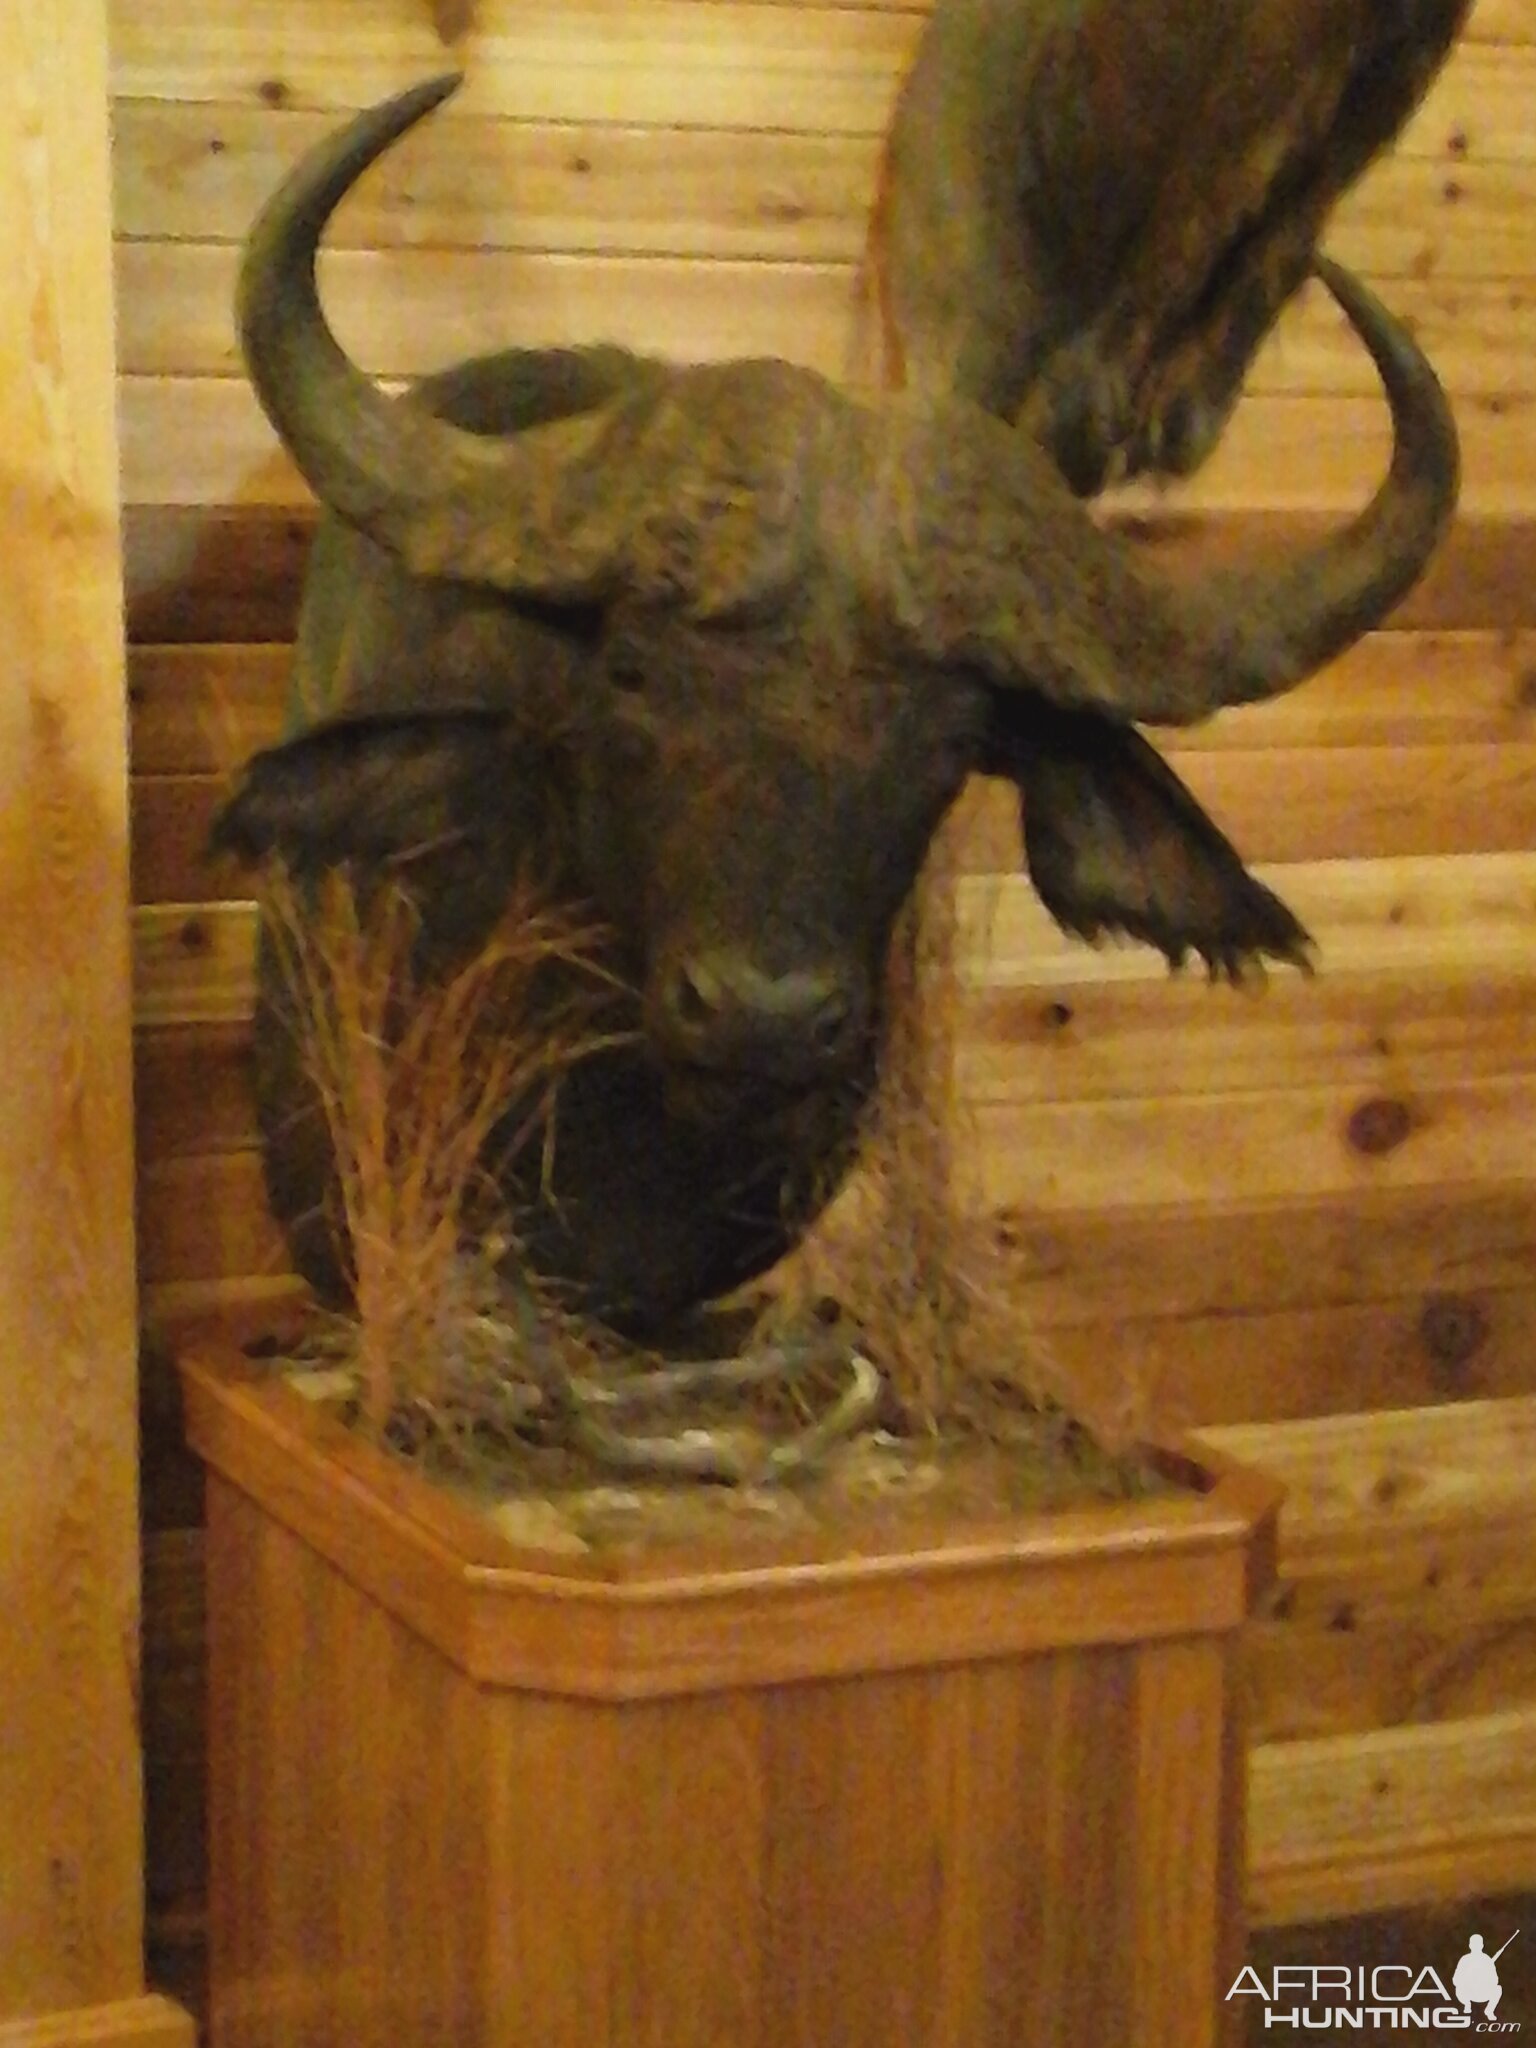 Buffalo back from taxidermy